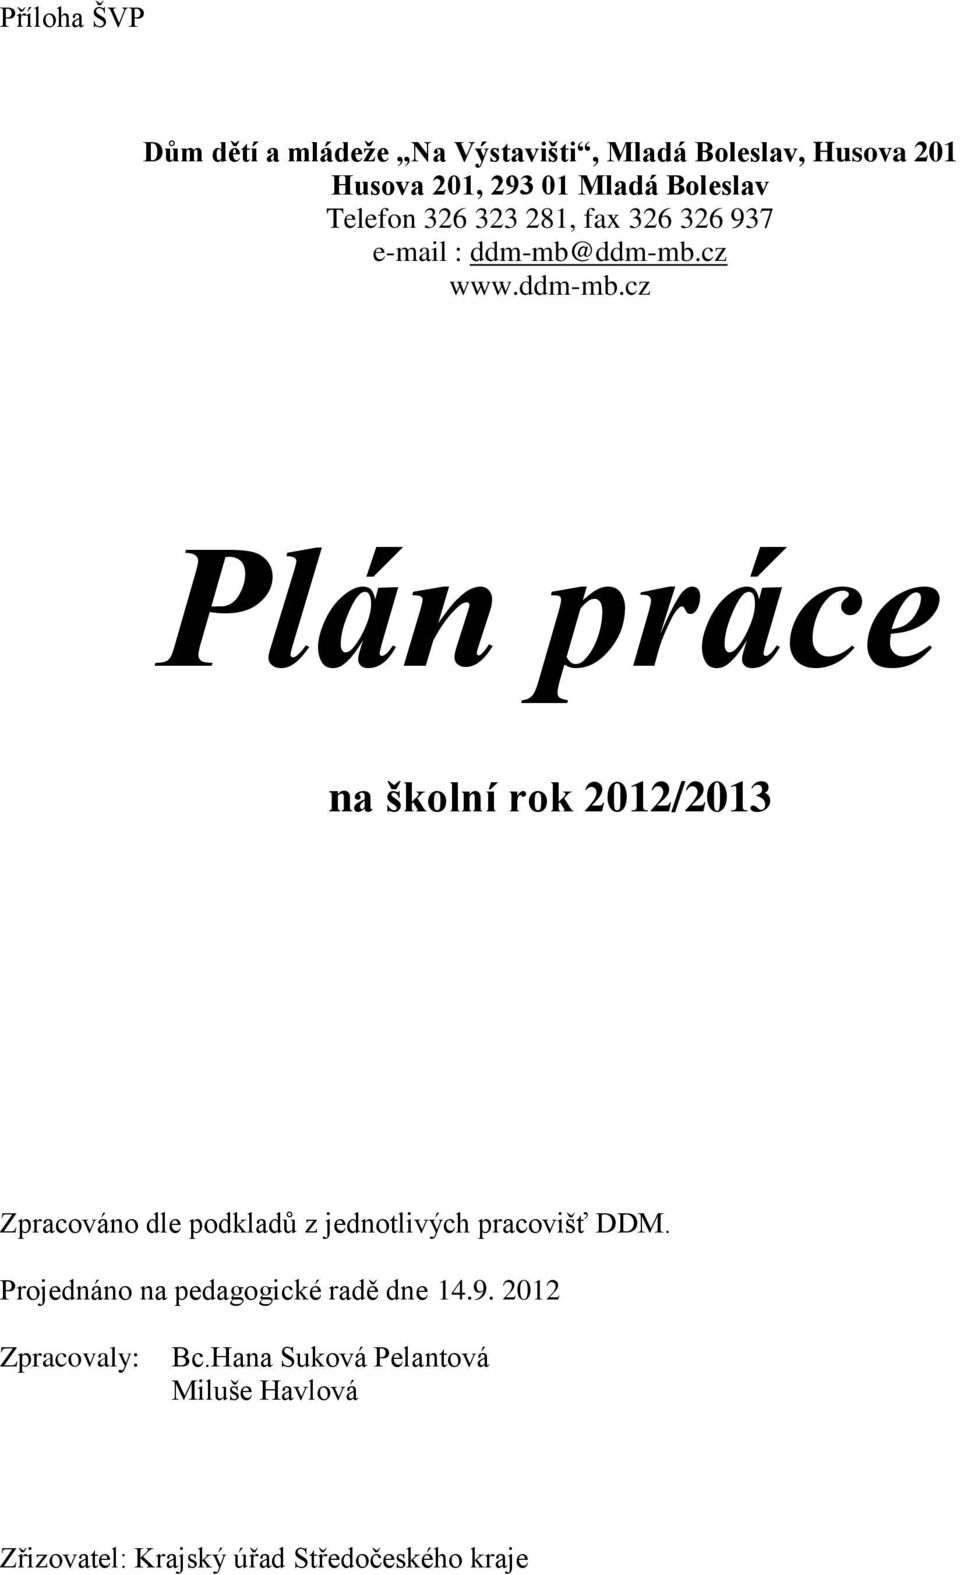 ddm-mb.cz www.ddm-mb.cz Plán práce na školní rok 2012/2013 Zpracováno dle podkladů z jednotlivých pracovišť.